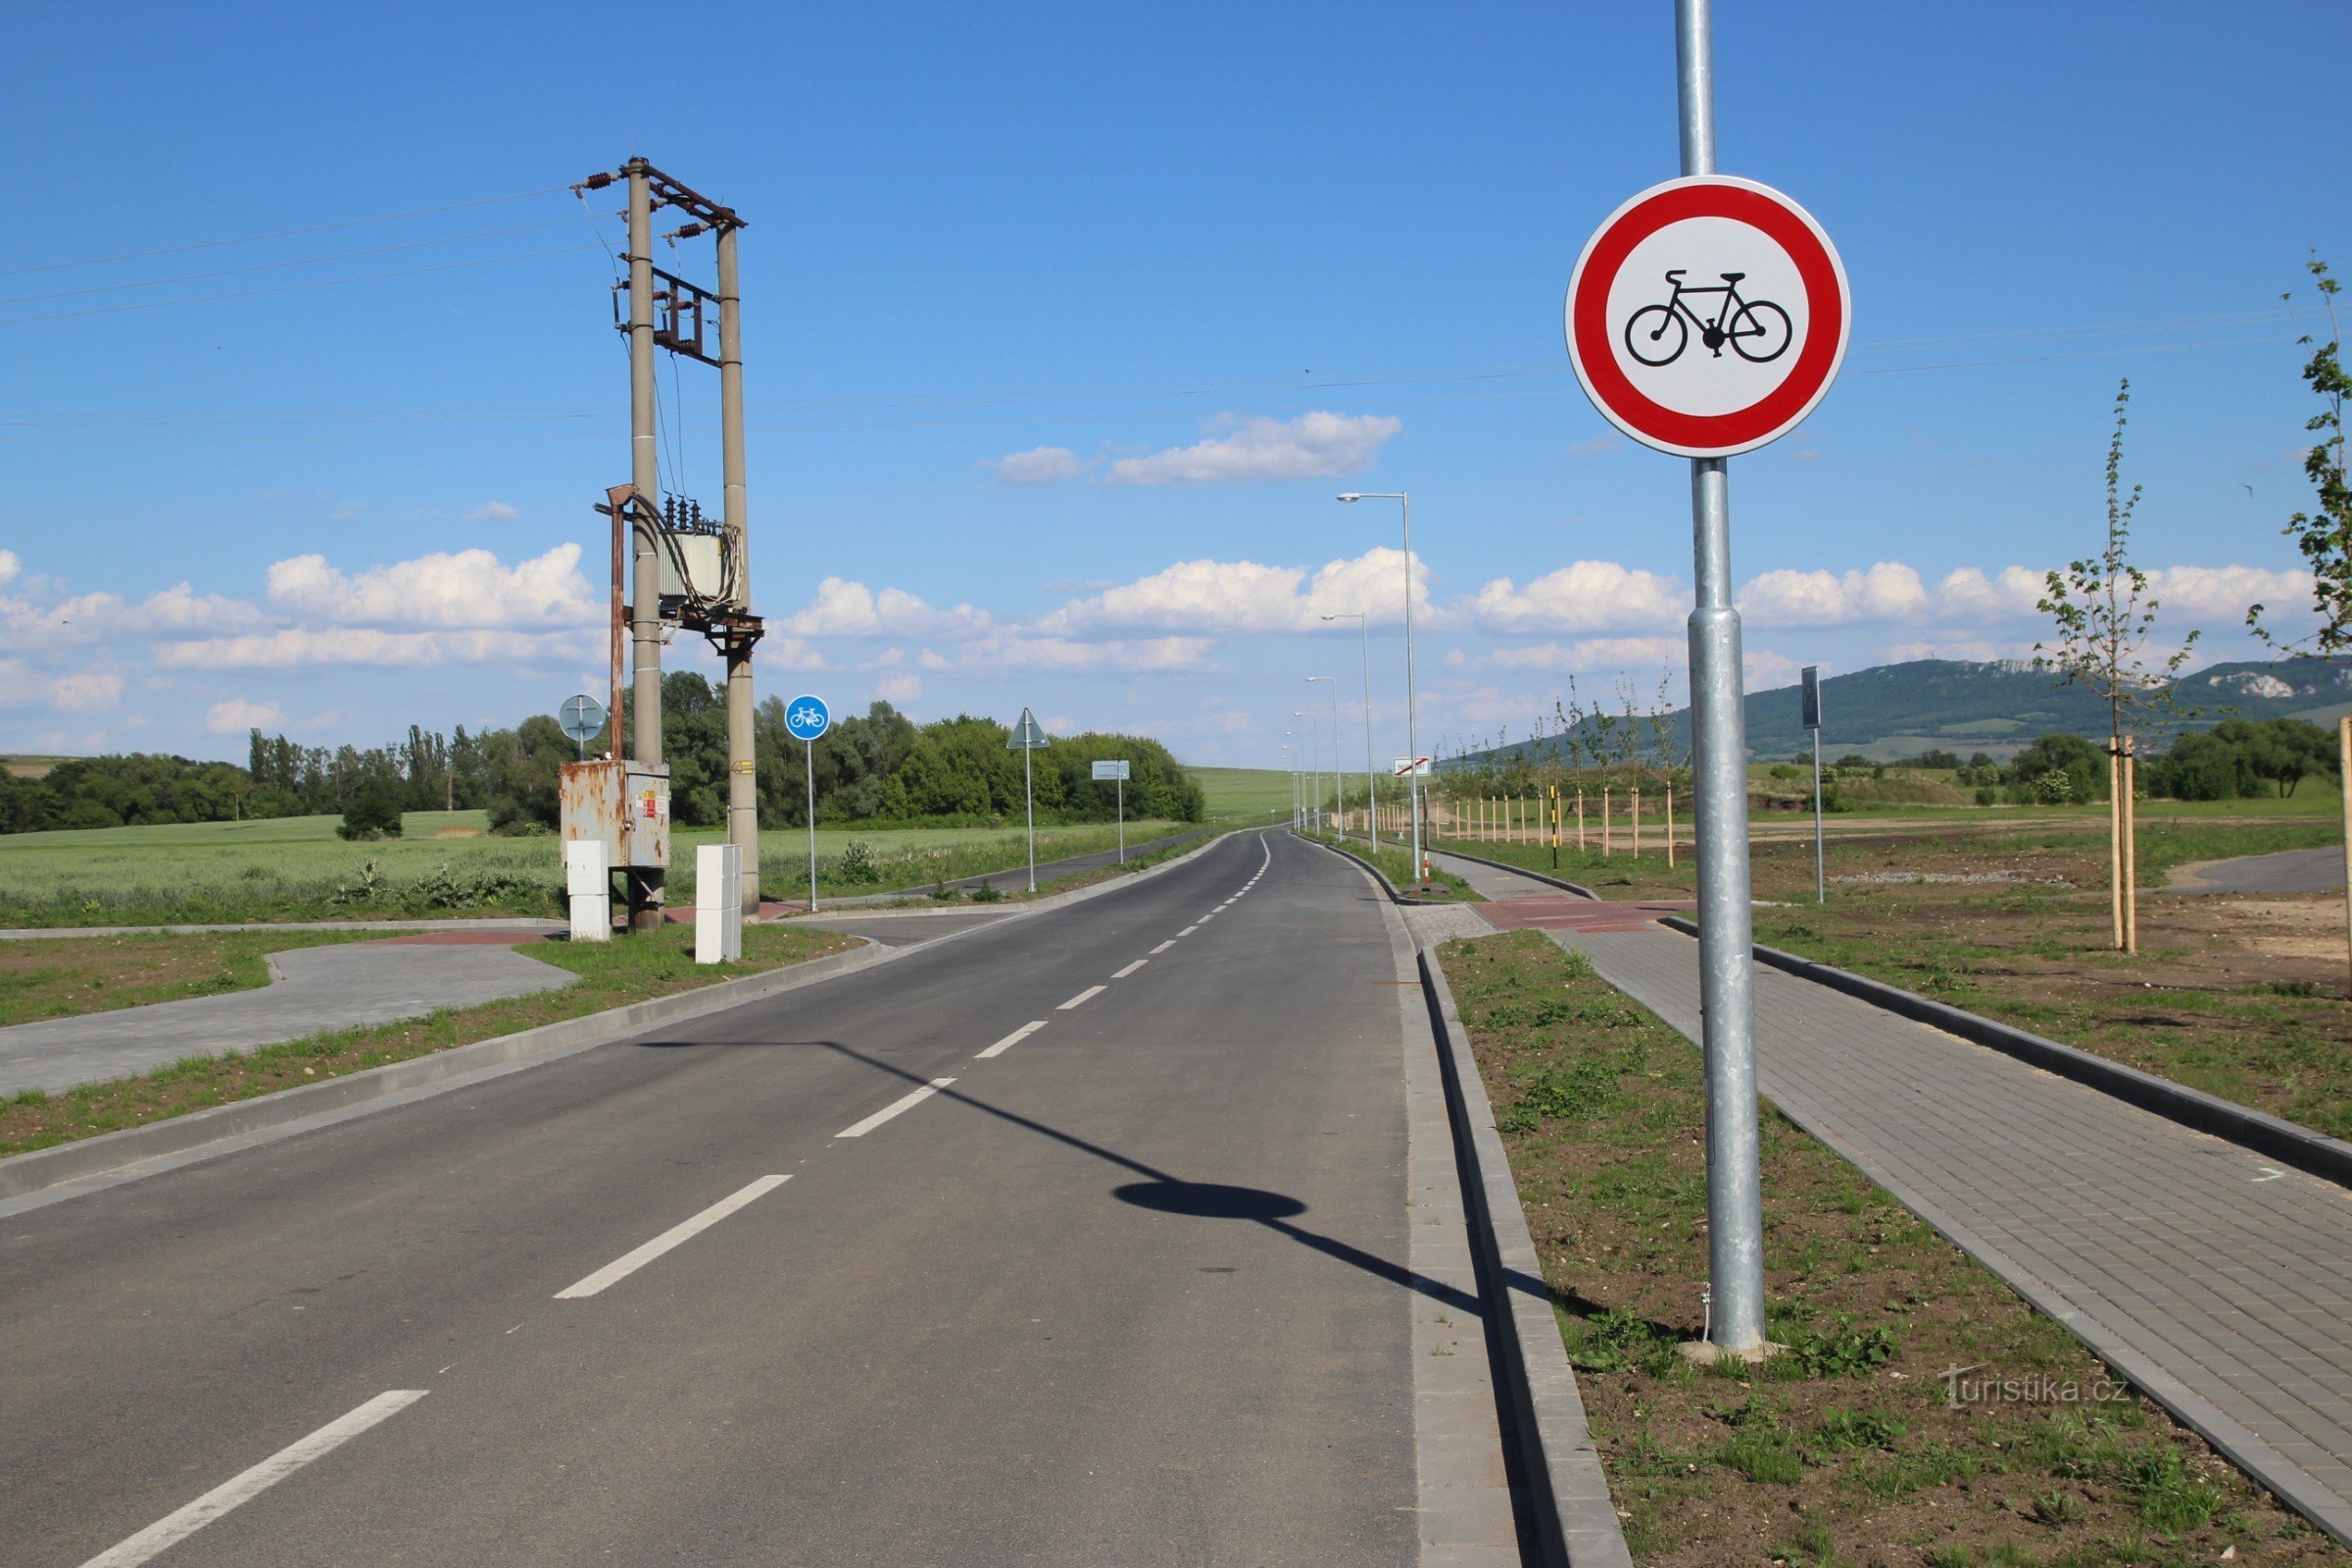 Con đường đạp xe bắt đầu ở cuối làng